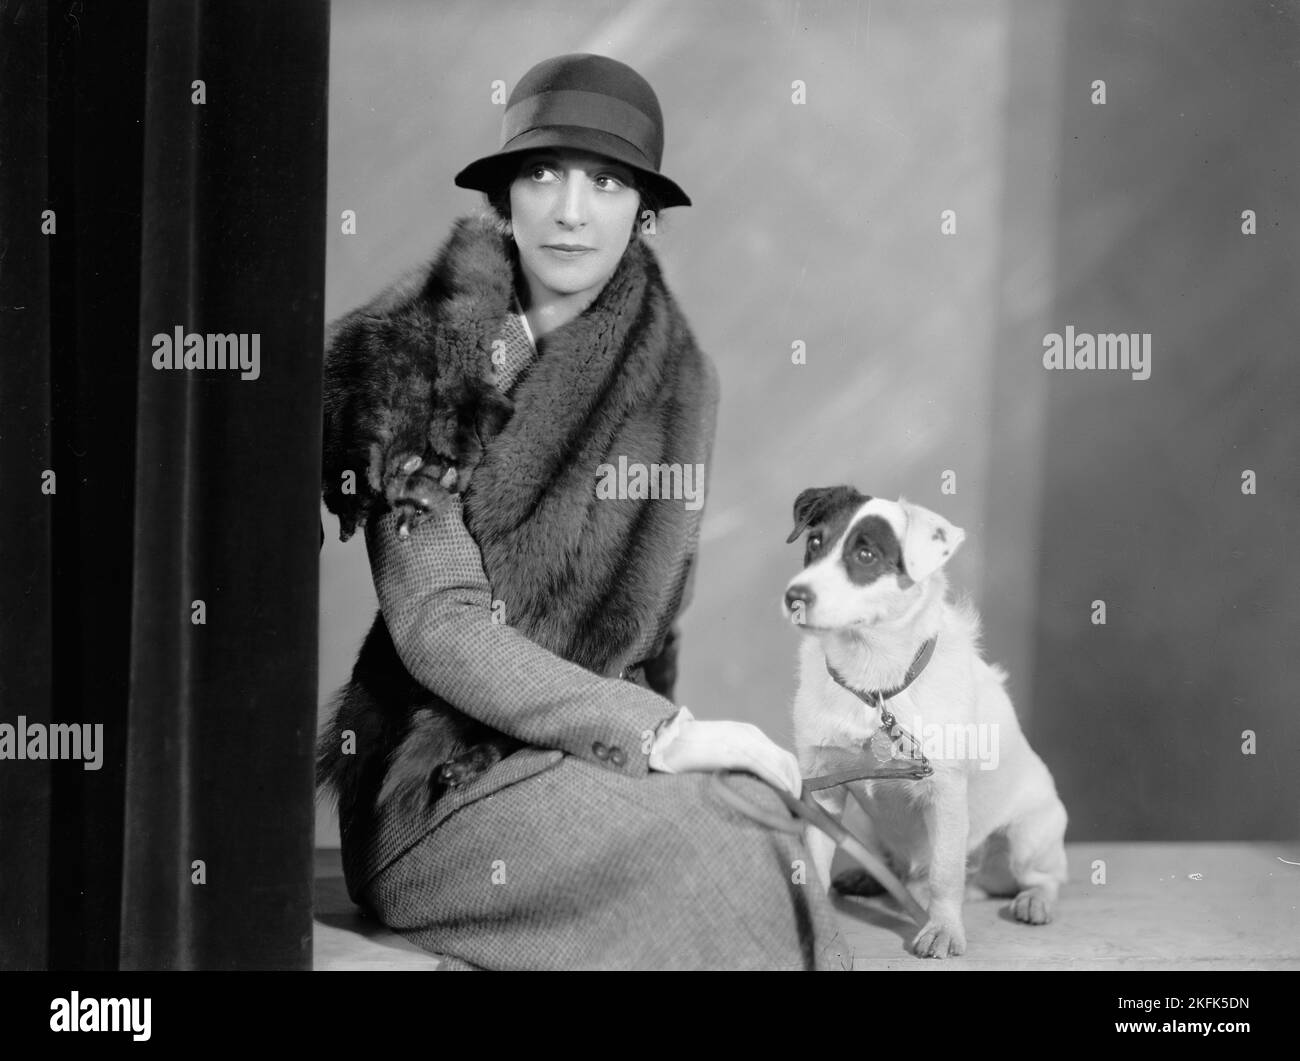 Дама с собачкой описание. Дама с собачкой 1960. Дама с собачкой фотосессия. Дама с собачкой ретро. Современная дама с собачкой.